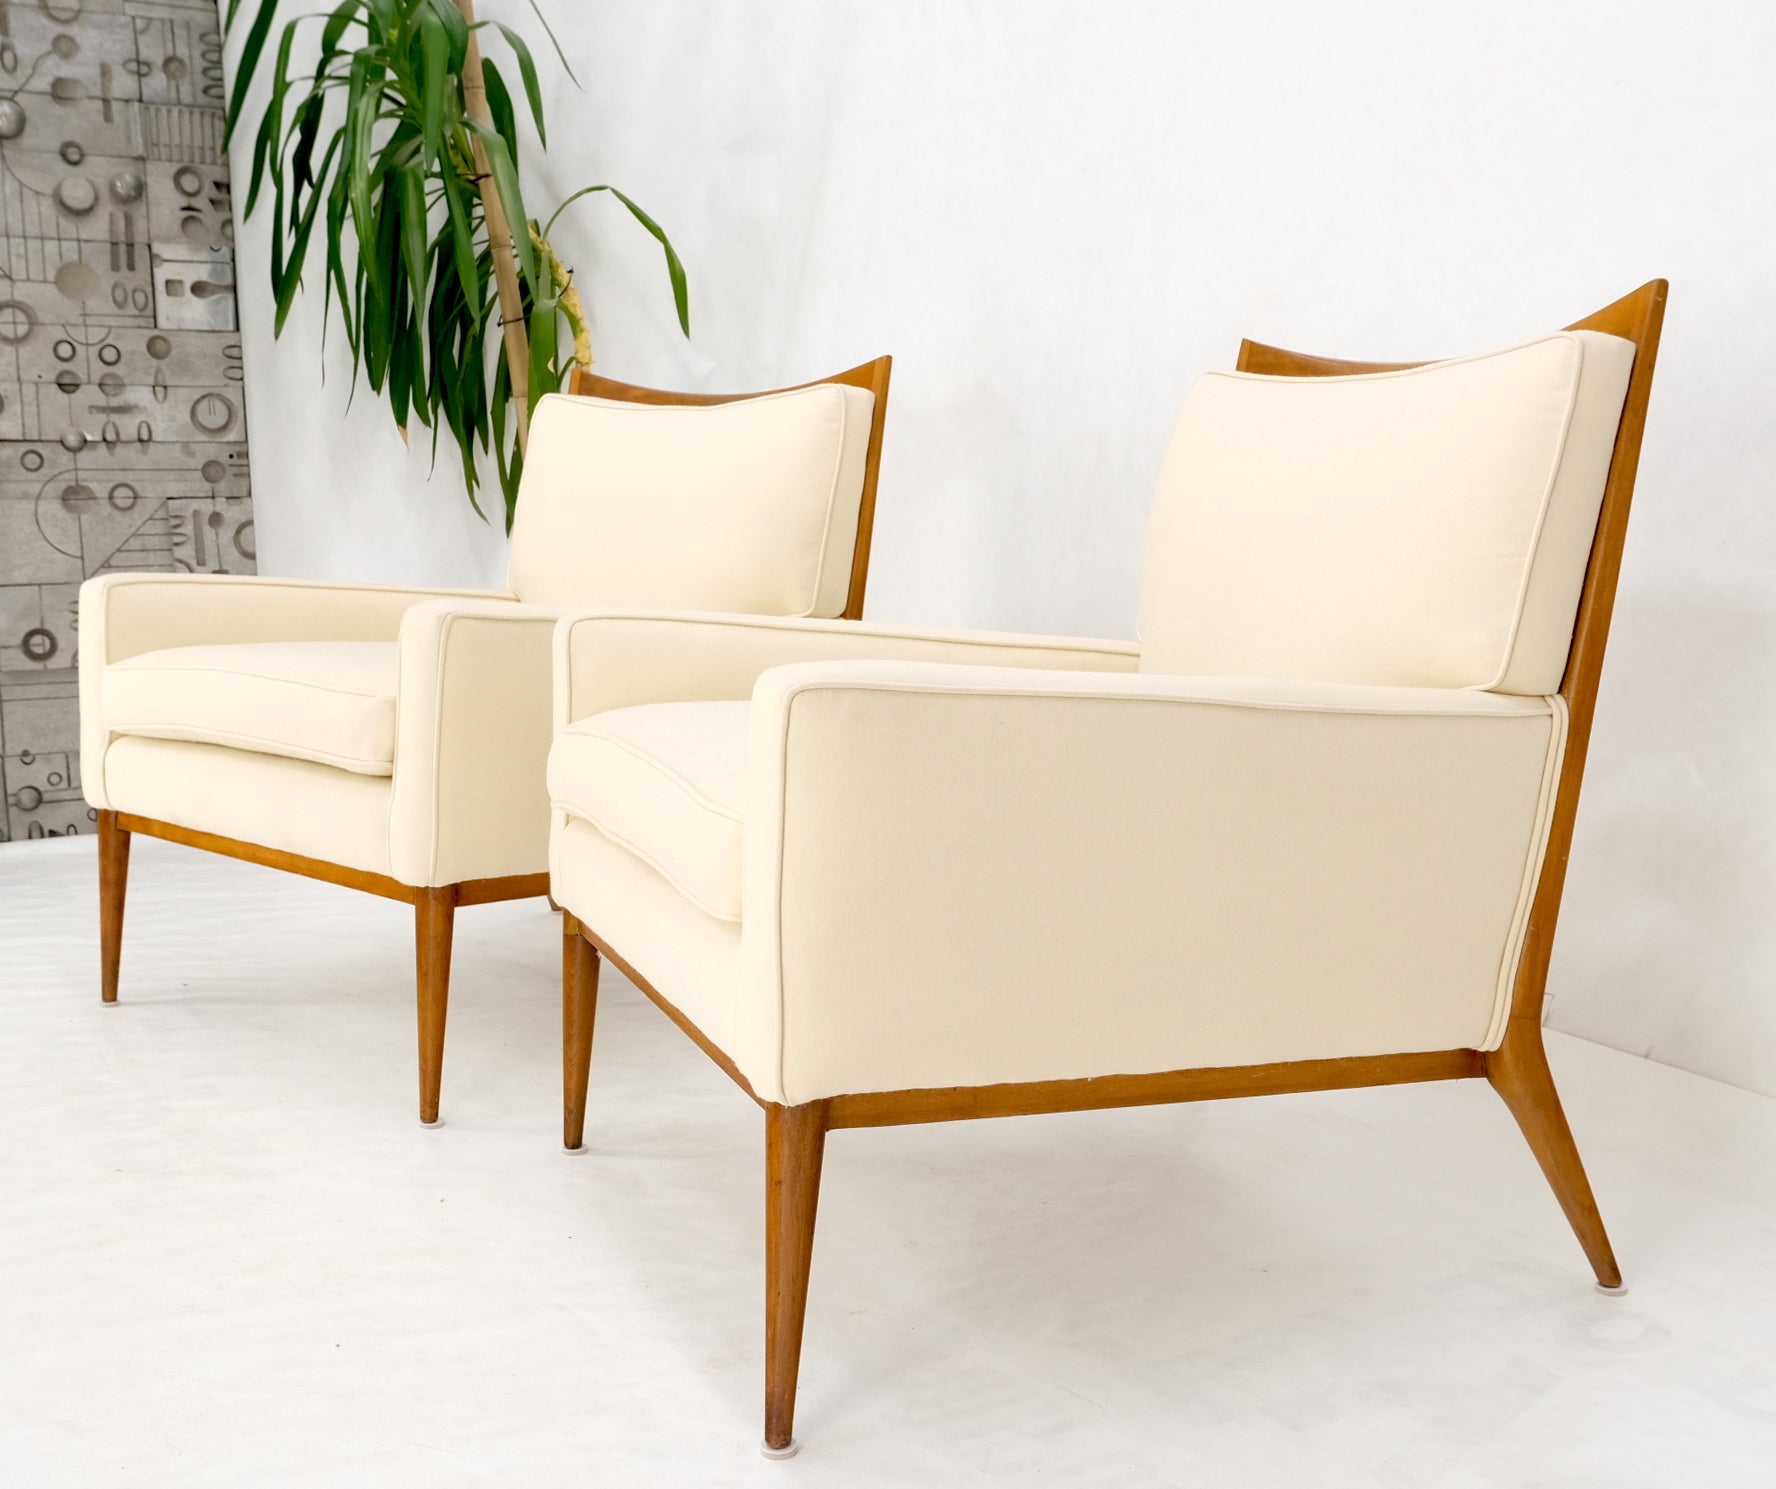 Paire de chaises longues McCobb modernes du milieu du siècle dernier, nouvellement rembourrées en tissu de laine vierge crème, superbe !